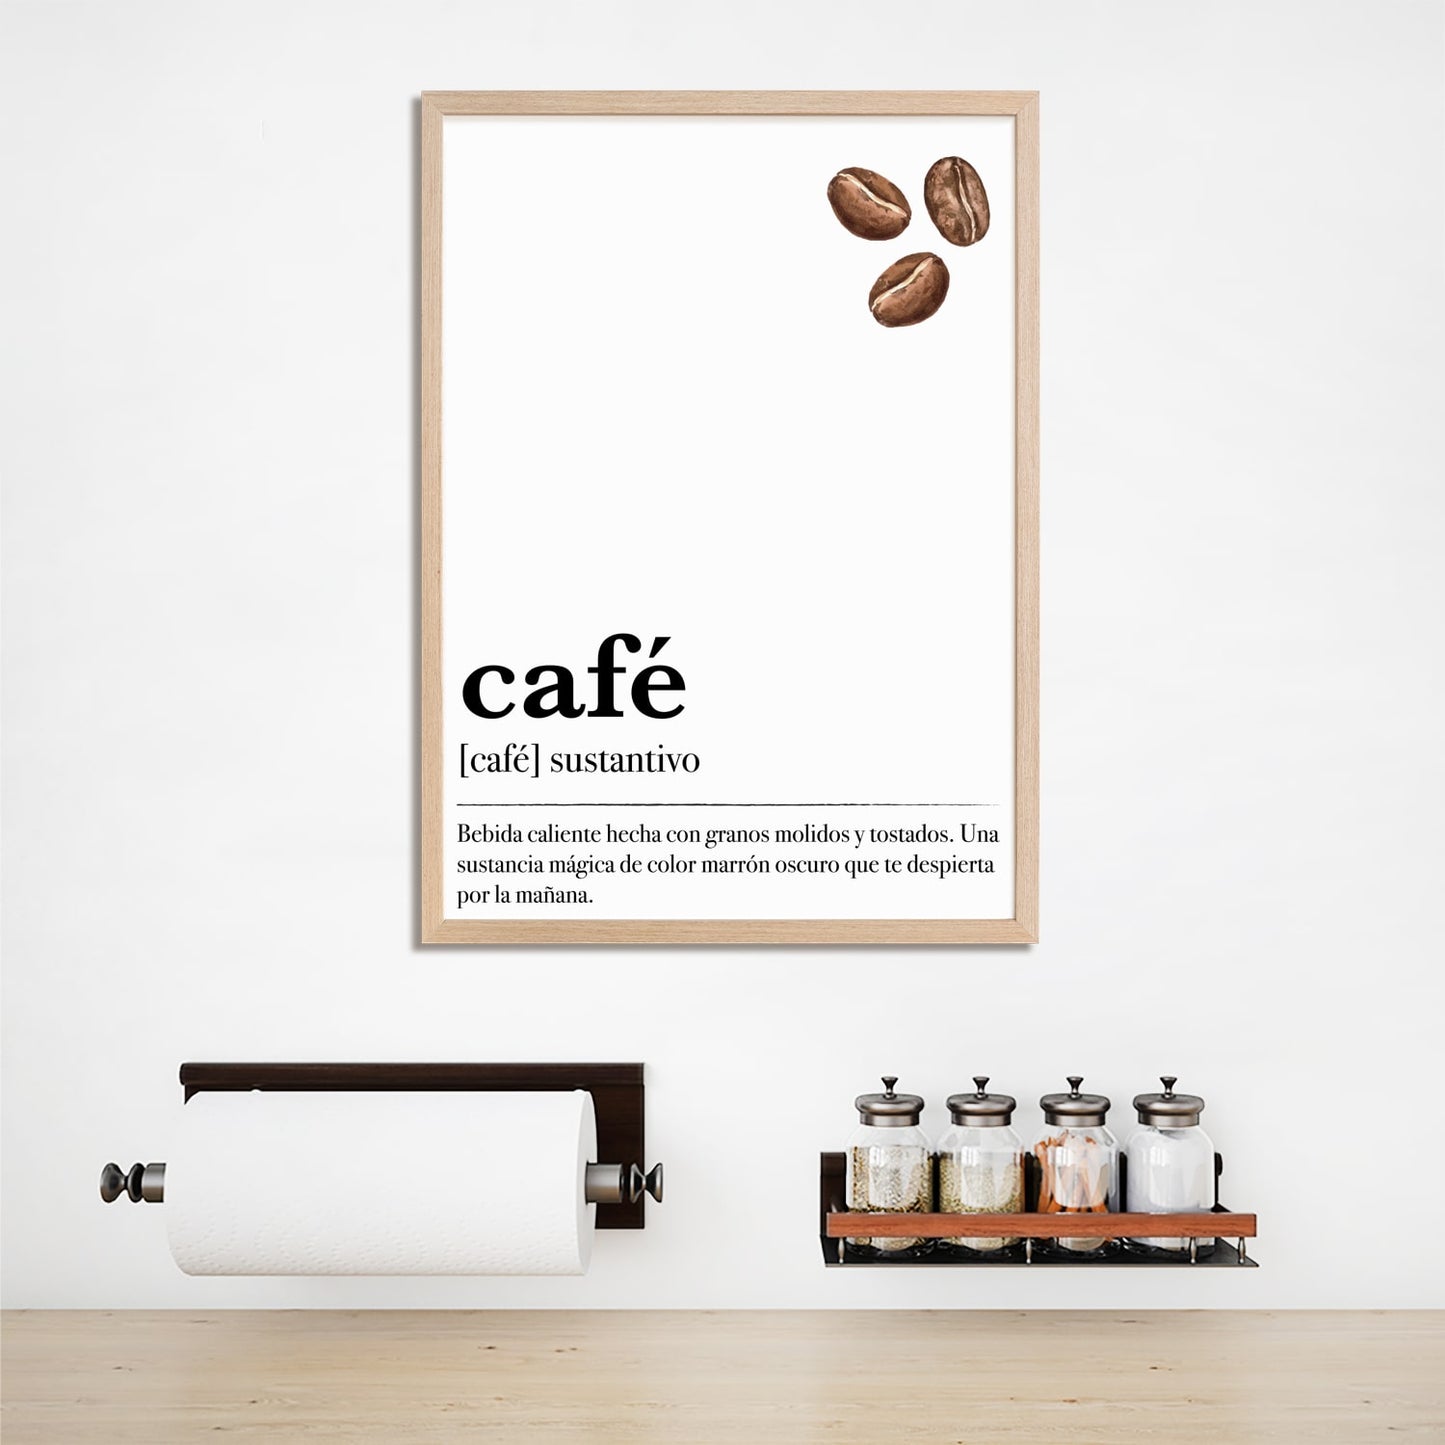 Cuadro decorativo "Café" enmarcado en madera, perfecto para la cocina o el bar de café.